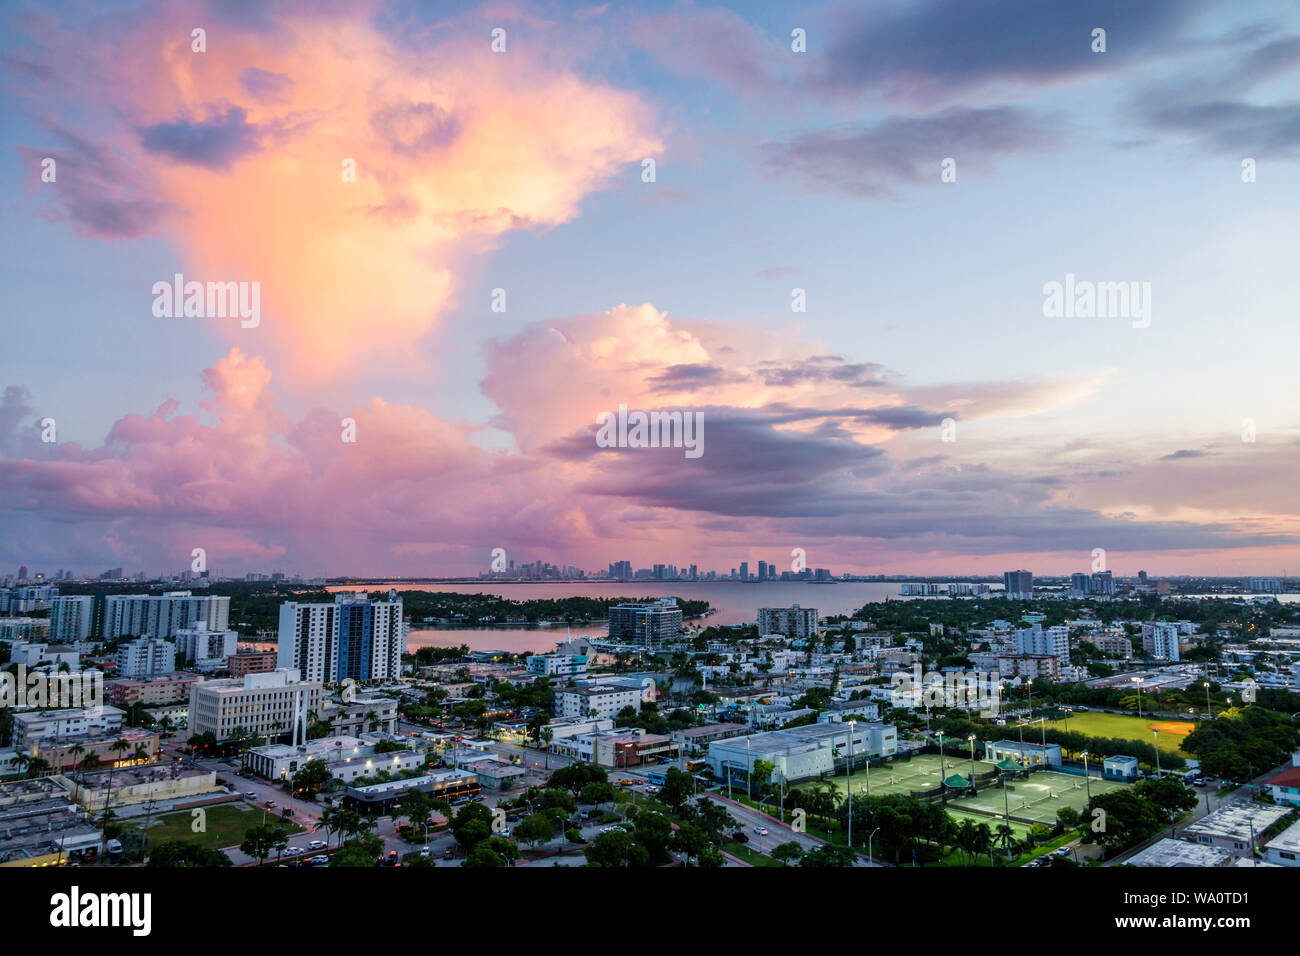 Miami Beach Florida, North Beach, Biscayne Bay, Wolken Wetter Himmel Sturm Wolken, Regen, Skyline der Stadt, Sonnenuntergang, FL190731016 Stockfoto